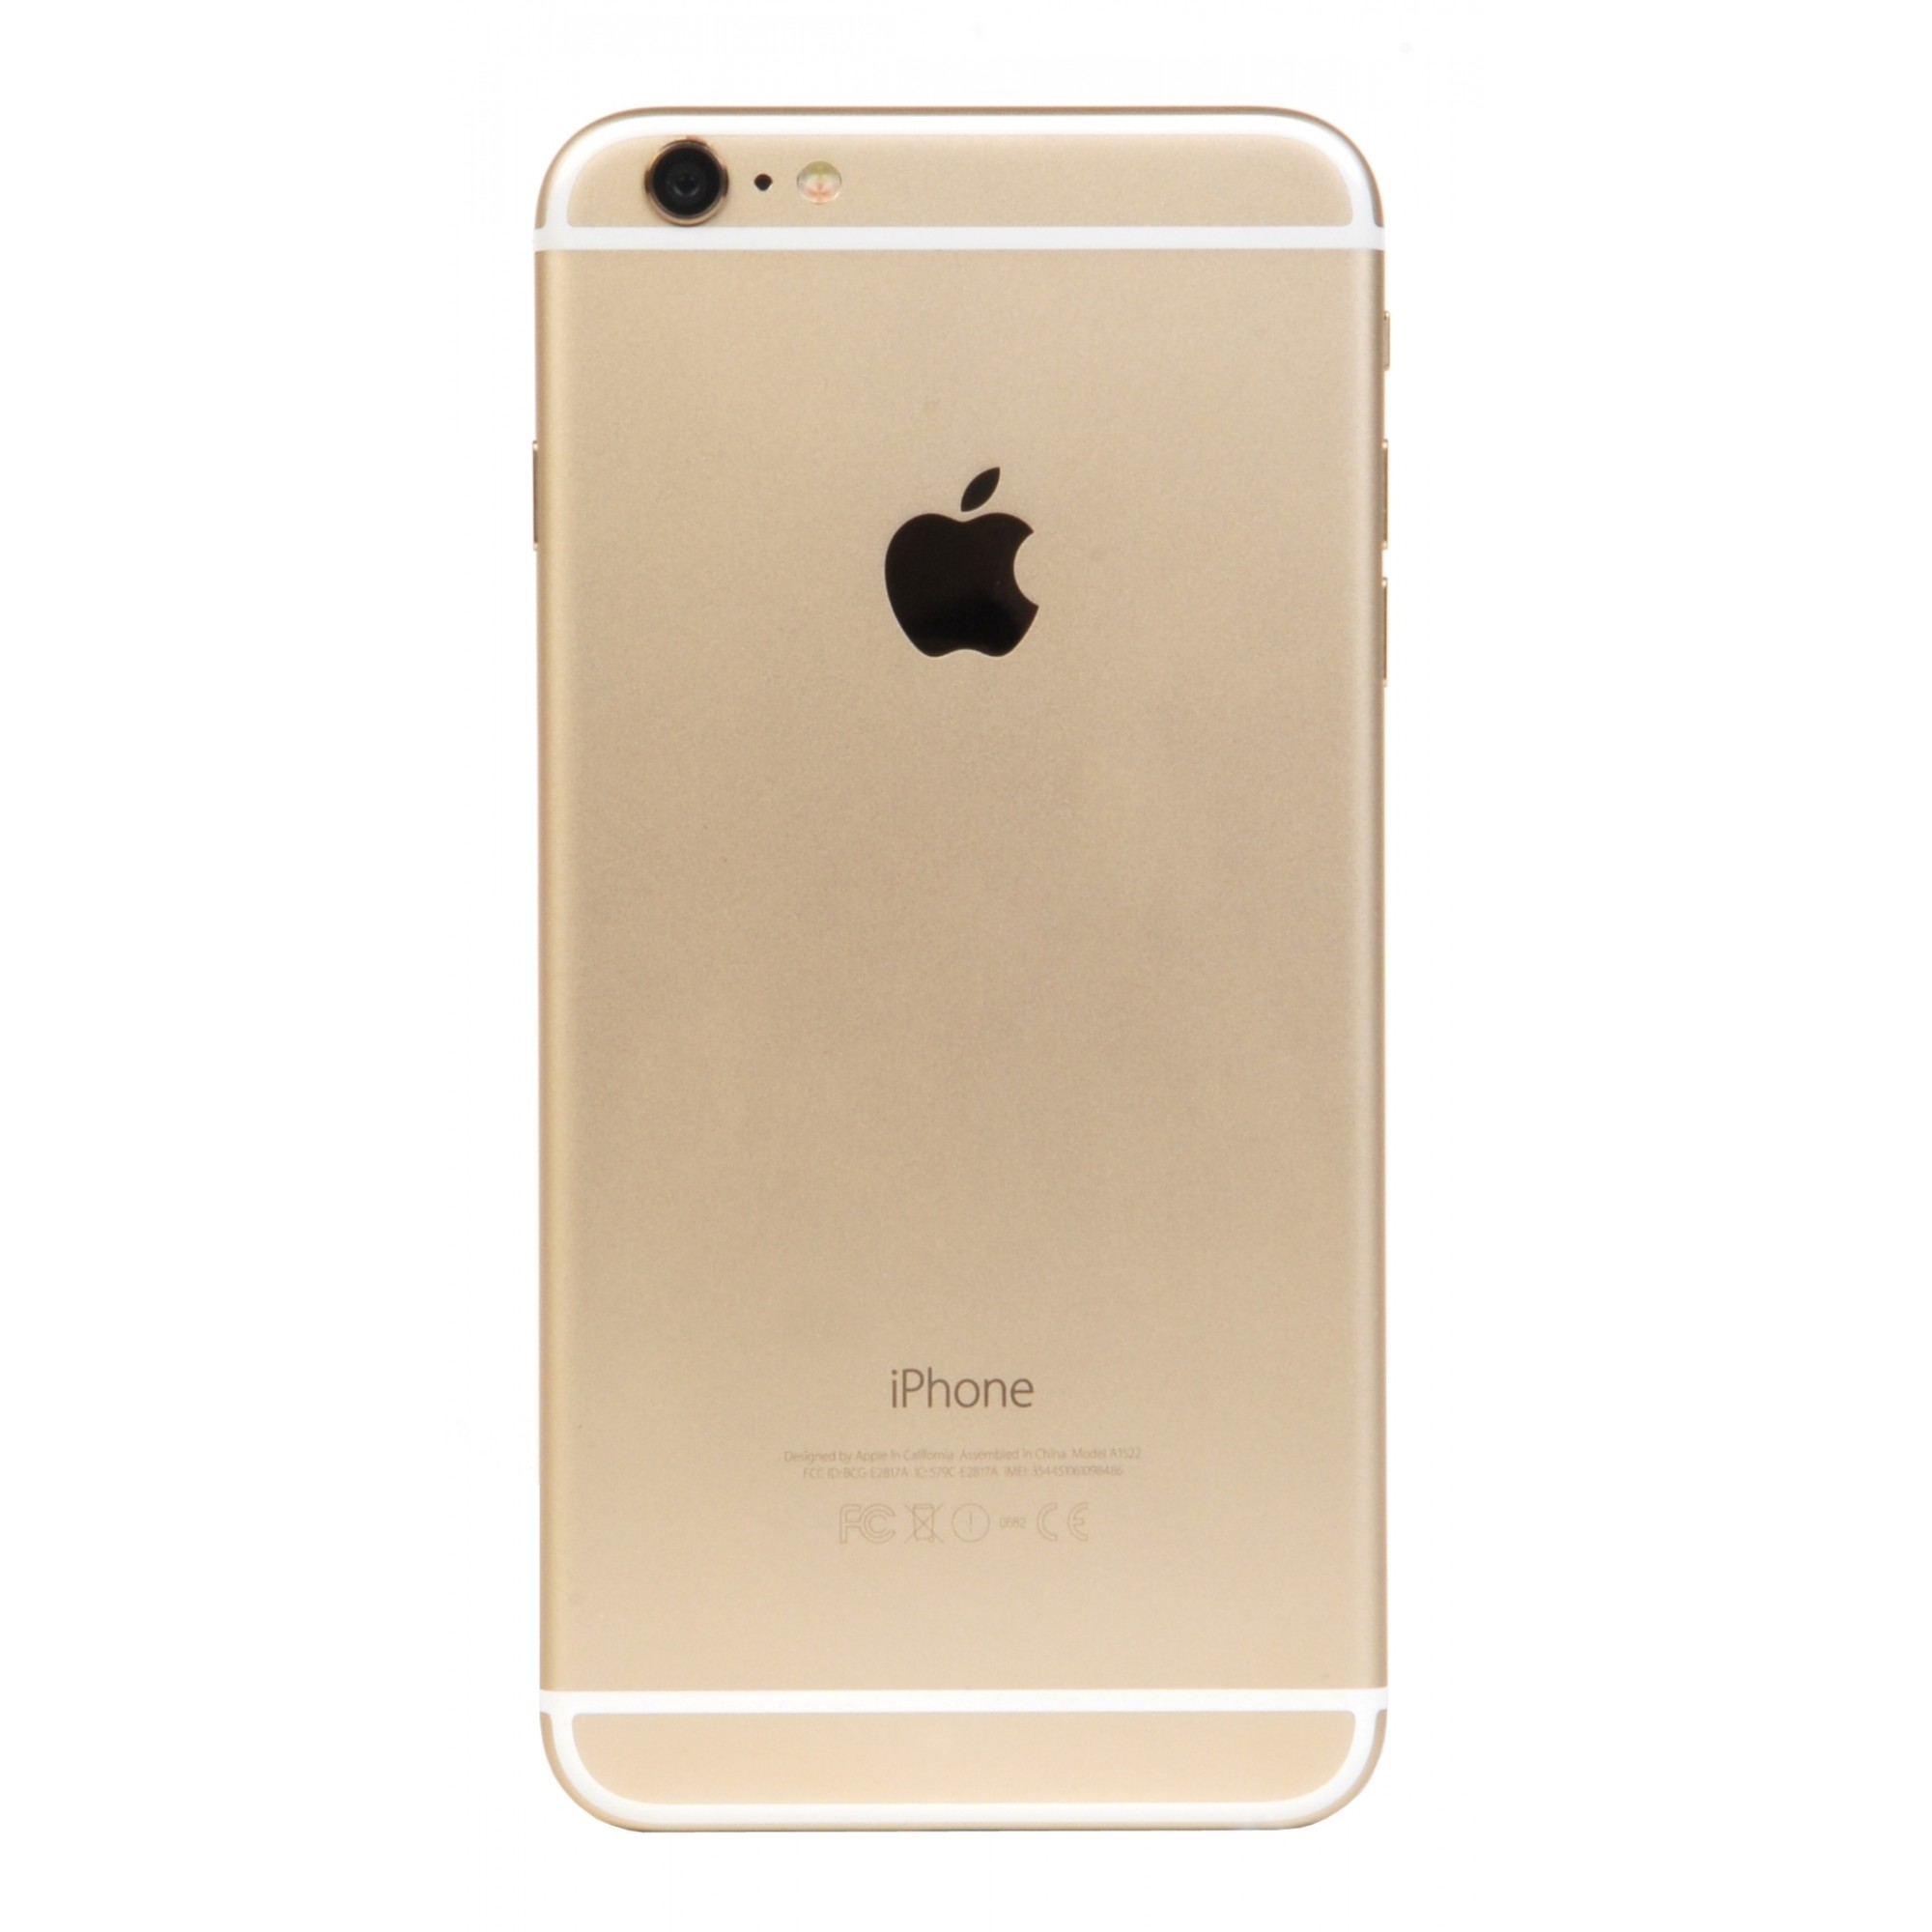 iPhone 6 Plus 128gb, Gold 4/5 б/у